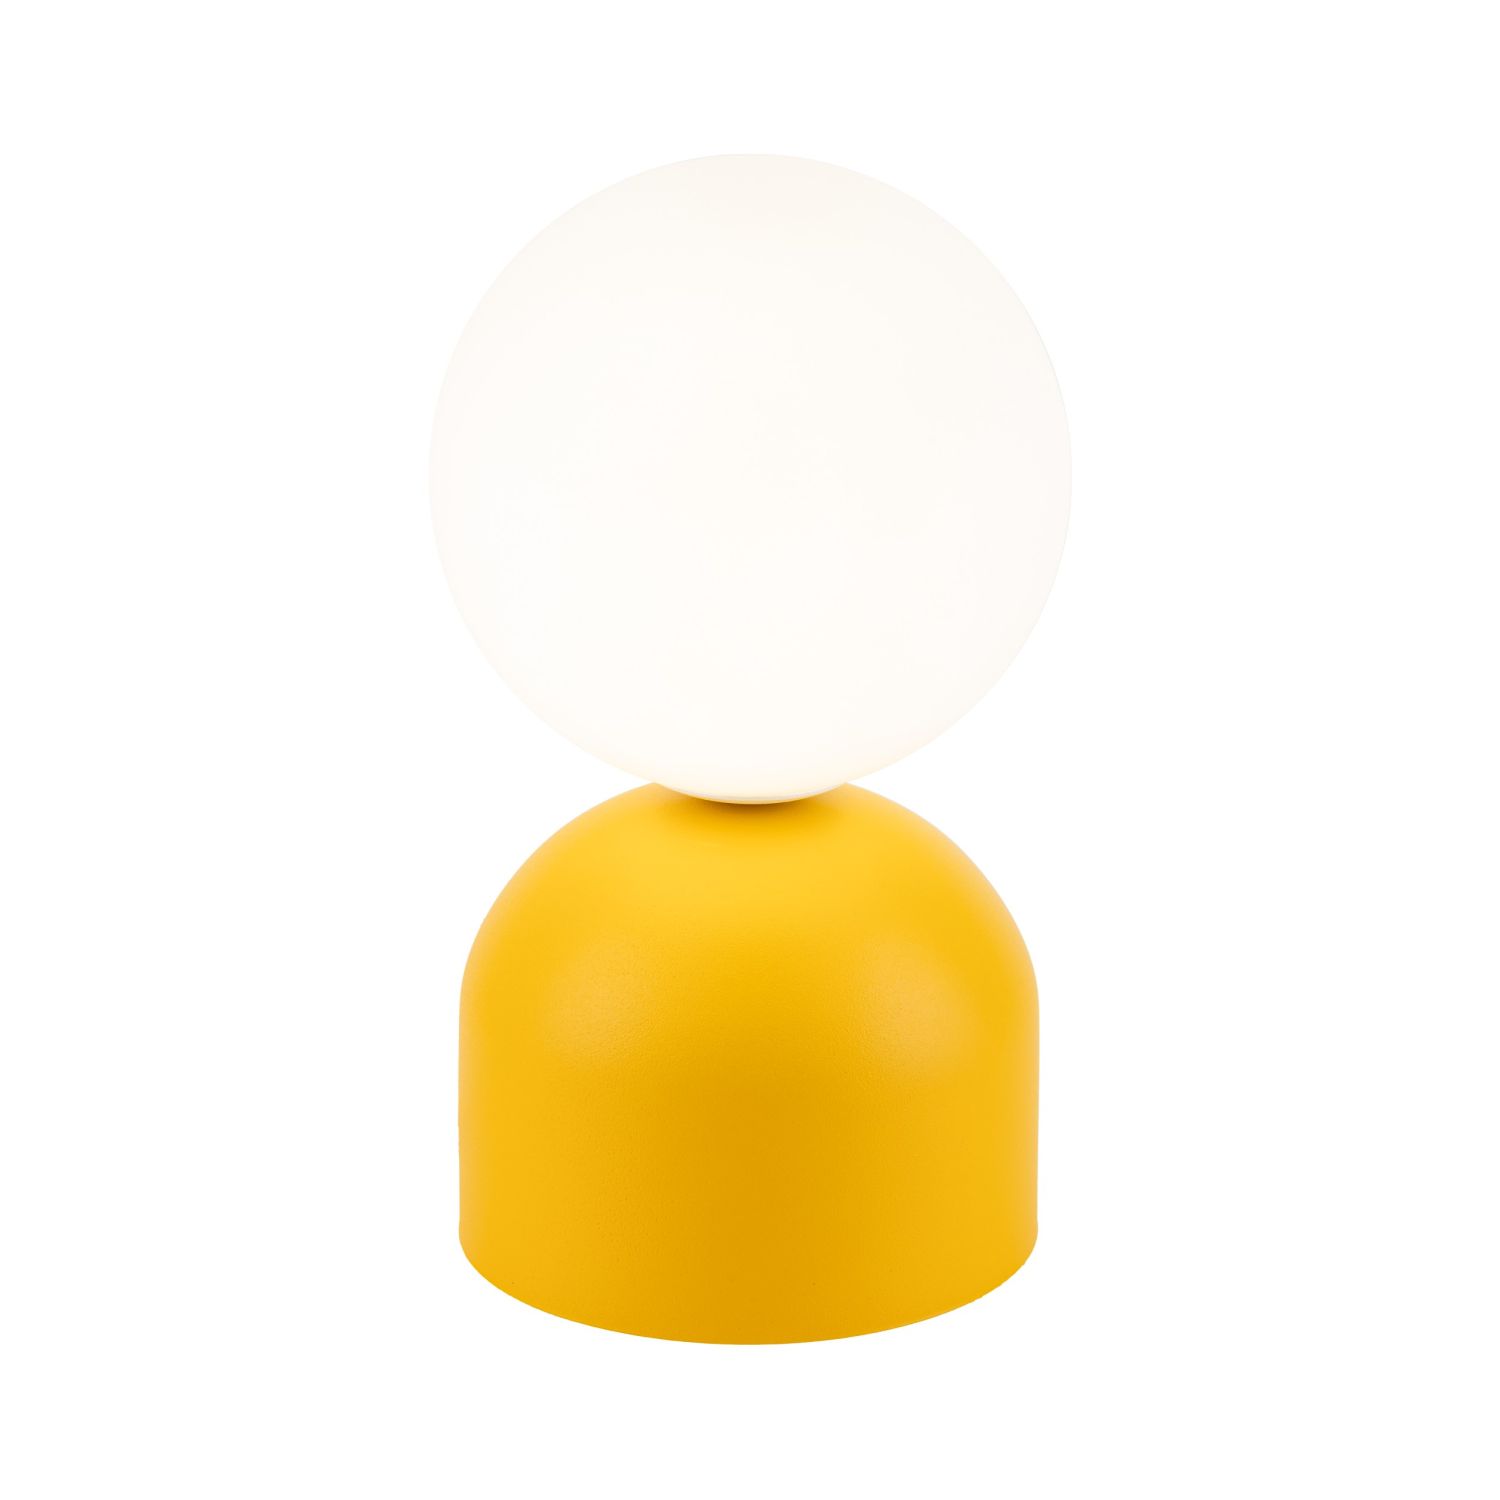 Retro Tischlampe Glas Metall H: 21 cm klein Gelb Weiß G9